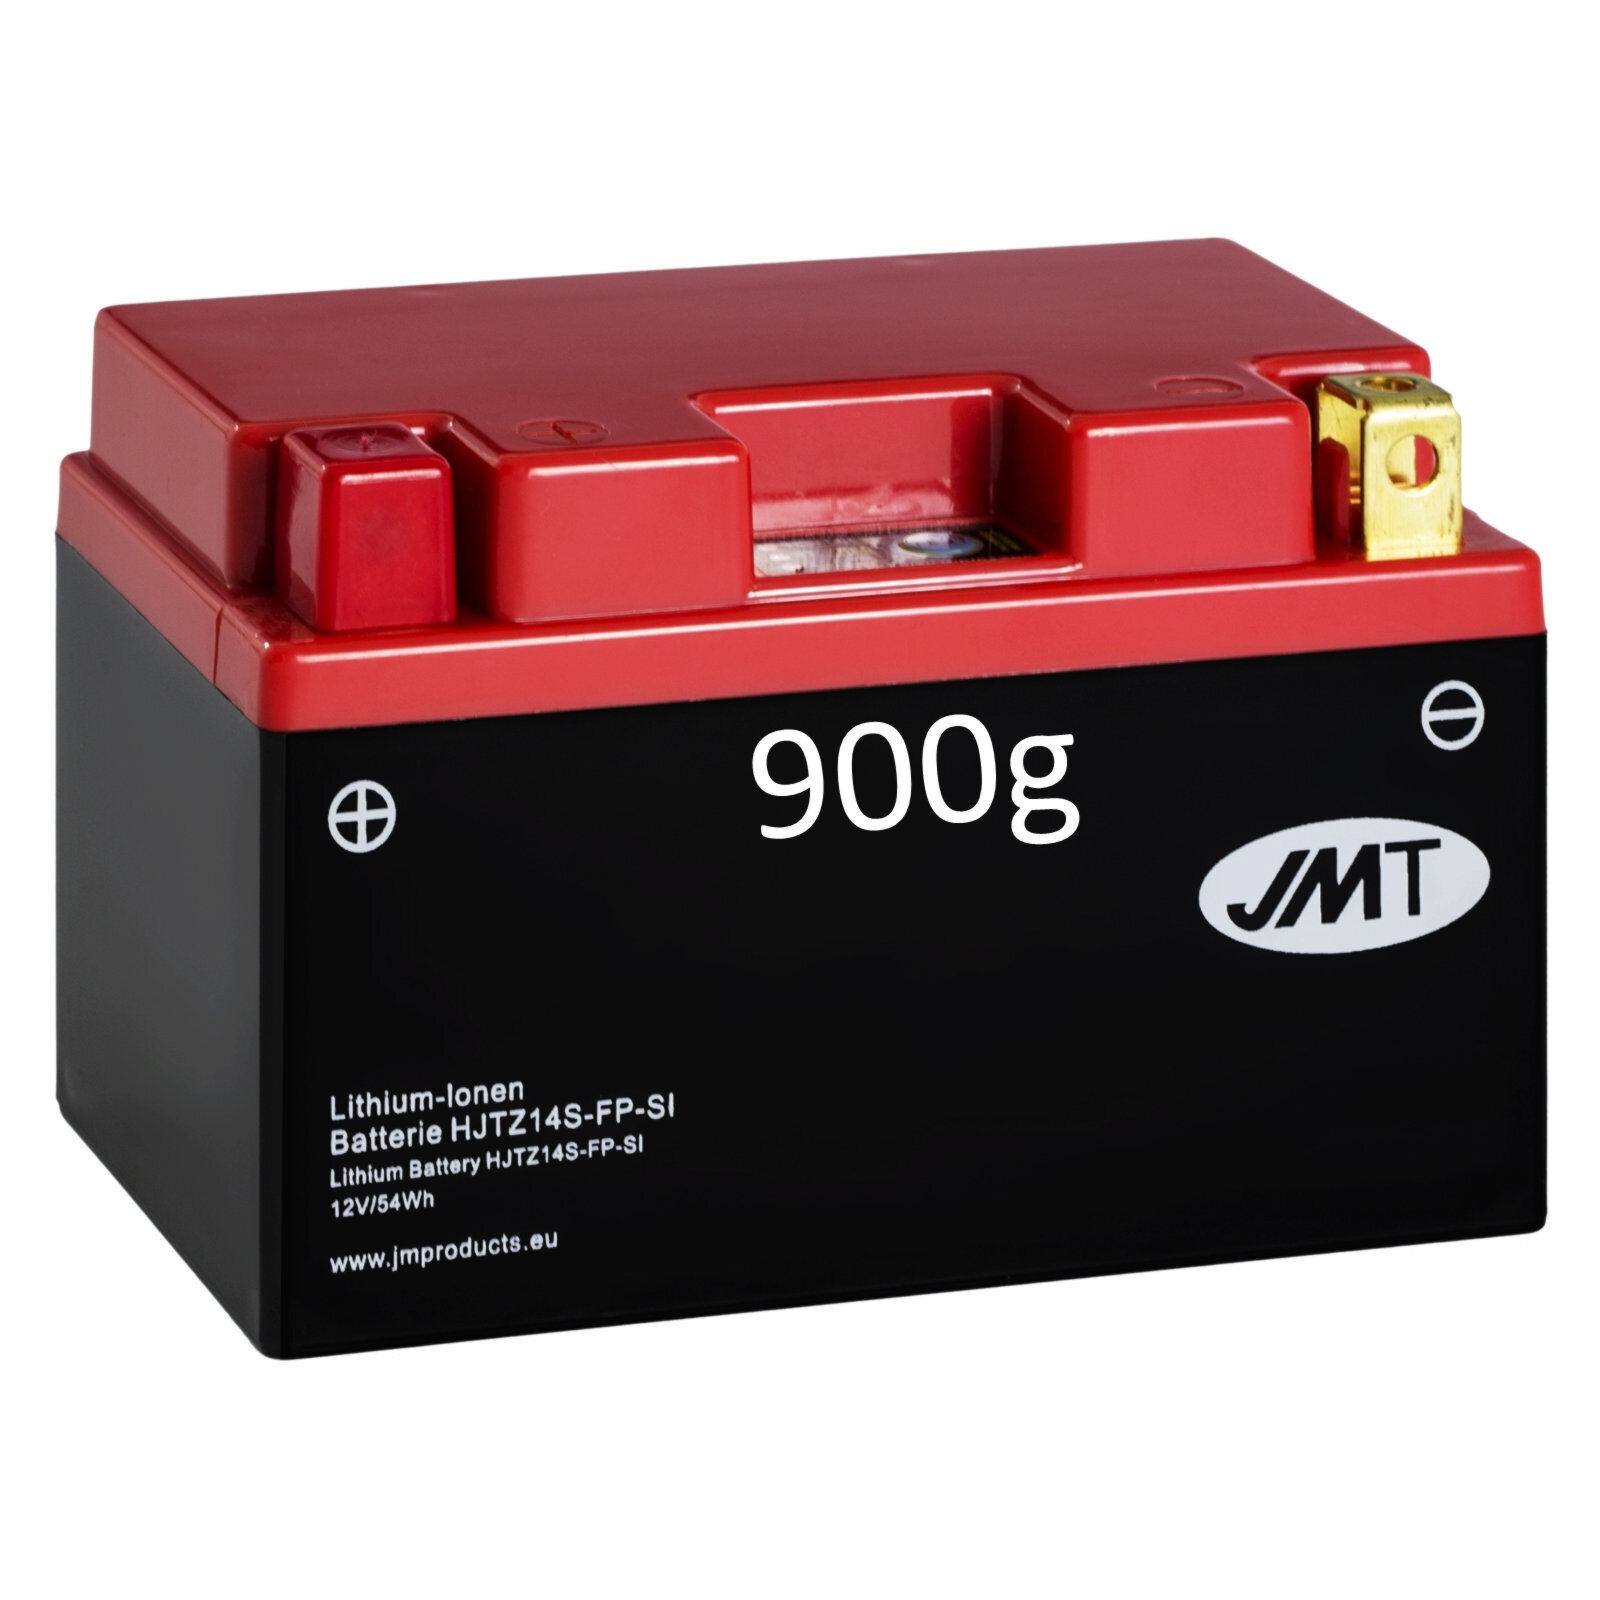 Lithium-Batterie für KTM Adventure 990 LC8 ABS Baujahr 2006-2013 JMT HJTZ14S-FP